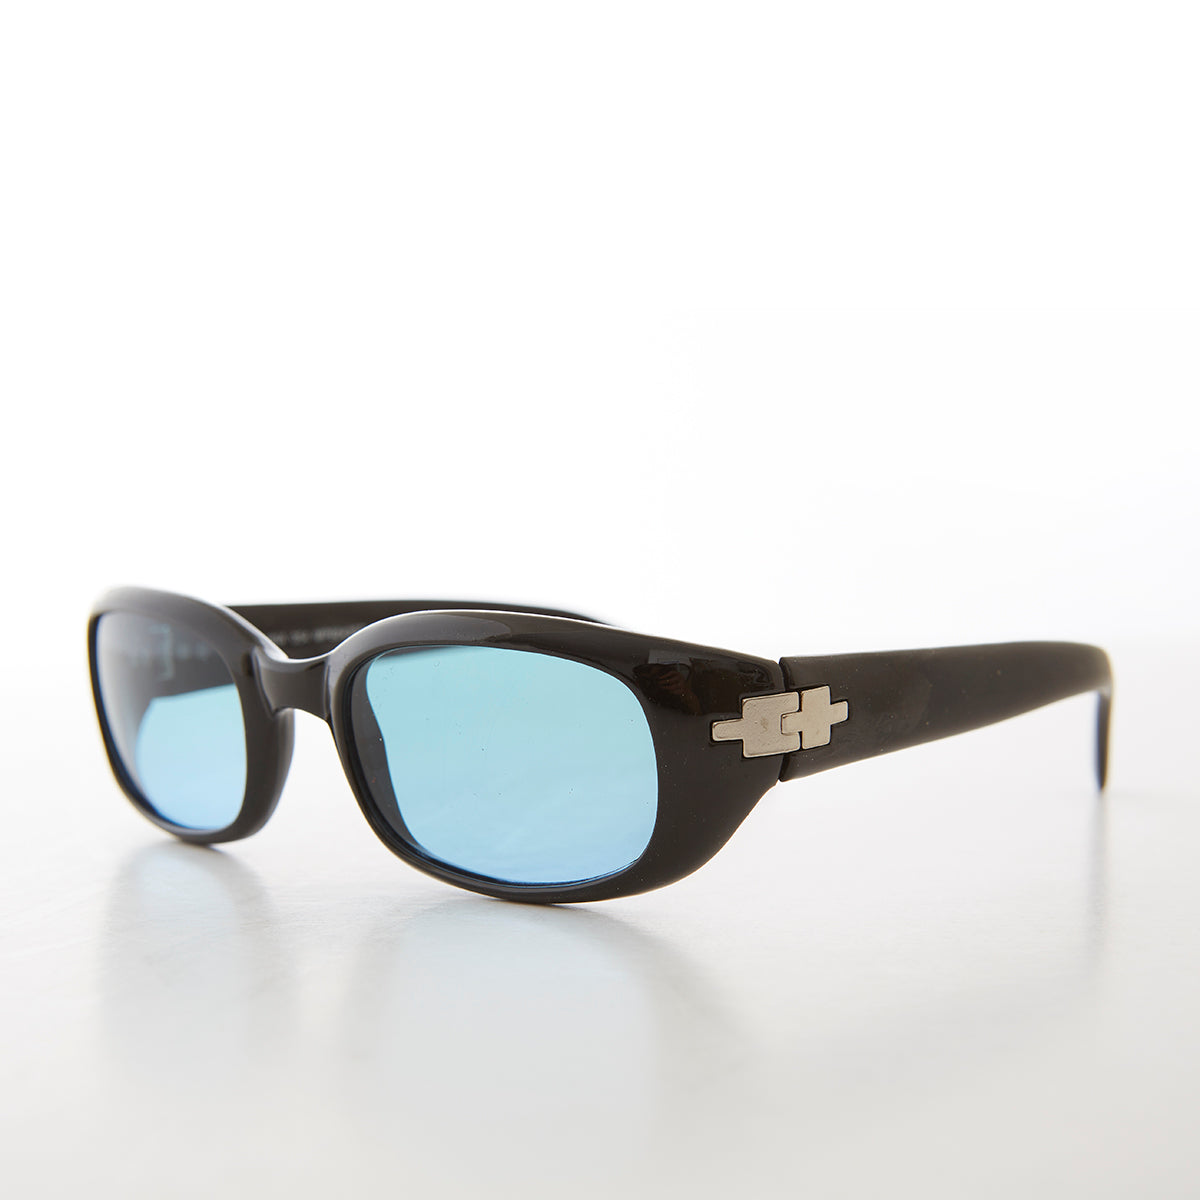 Unisex Rectangle Mod Vintage Sunglasses - Collins